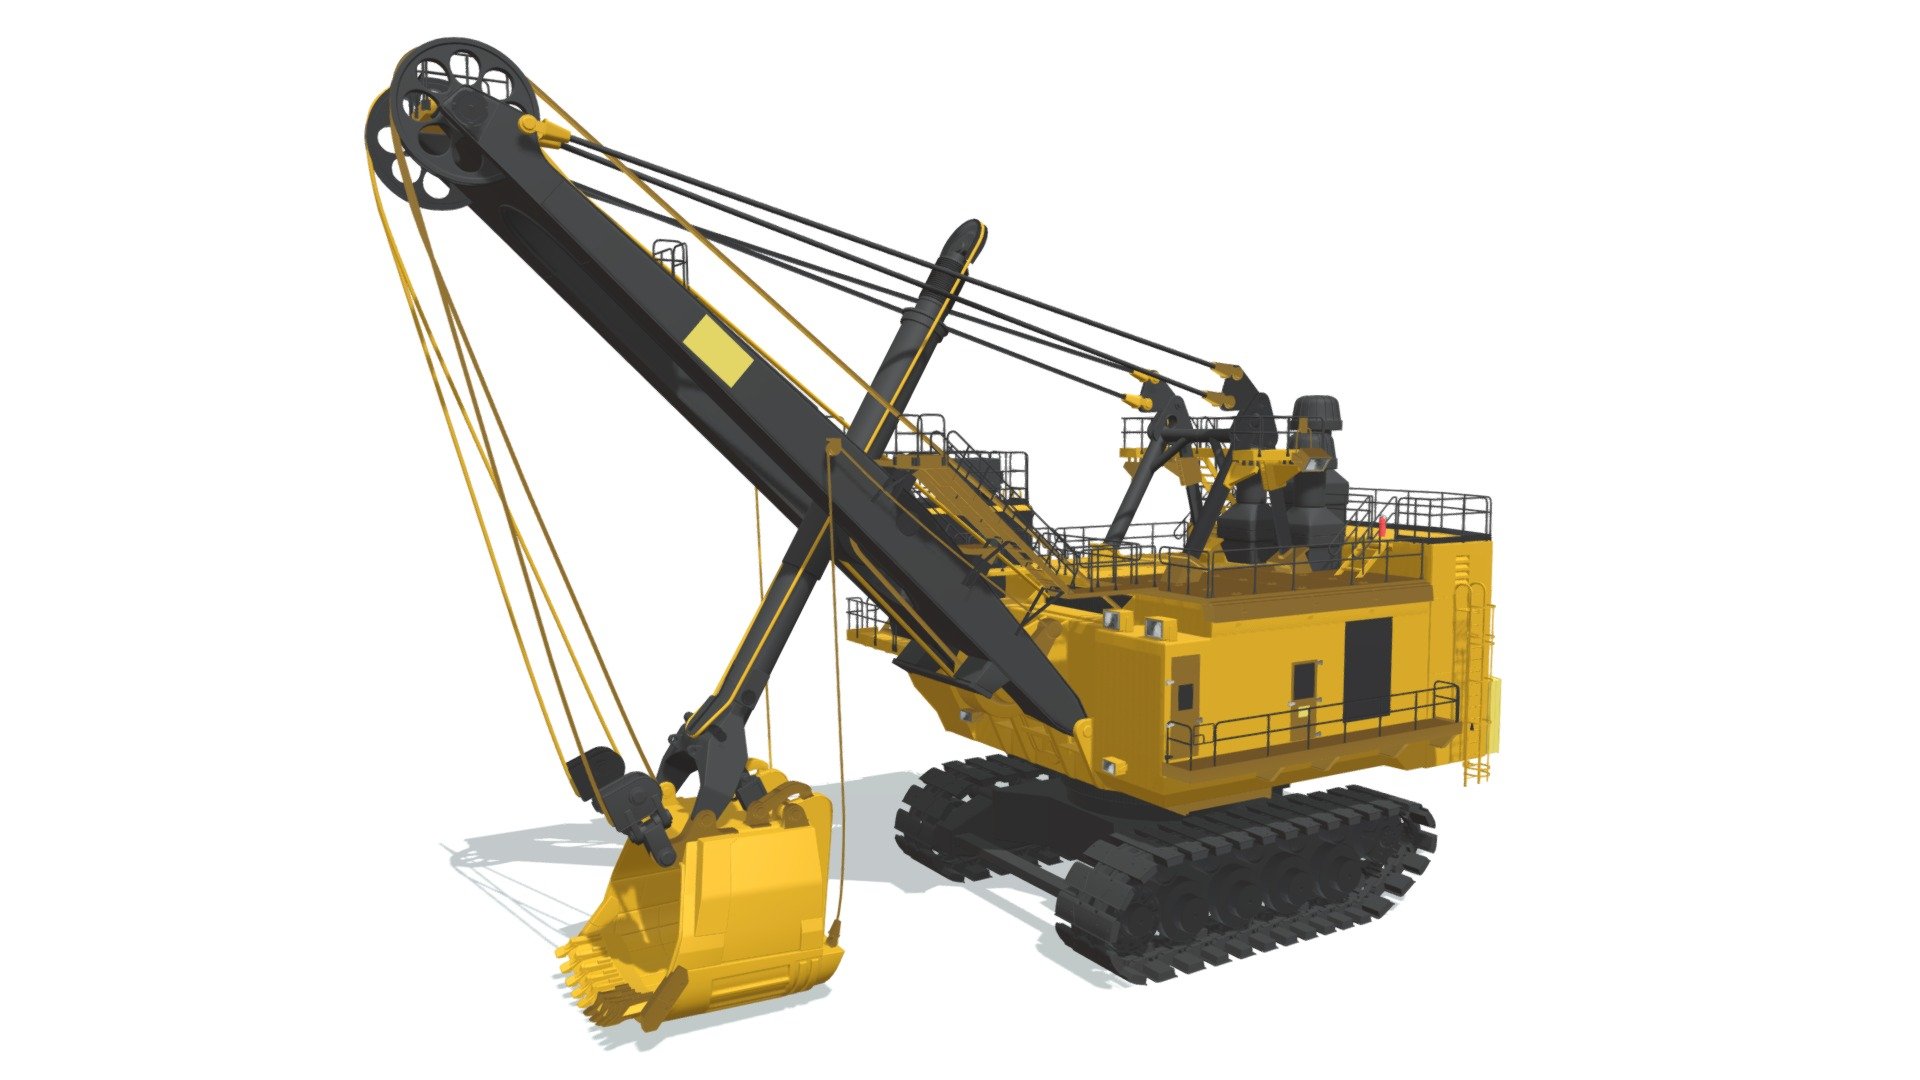 High quality 3d model of mining rope shovel 3d model